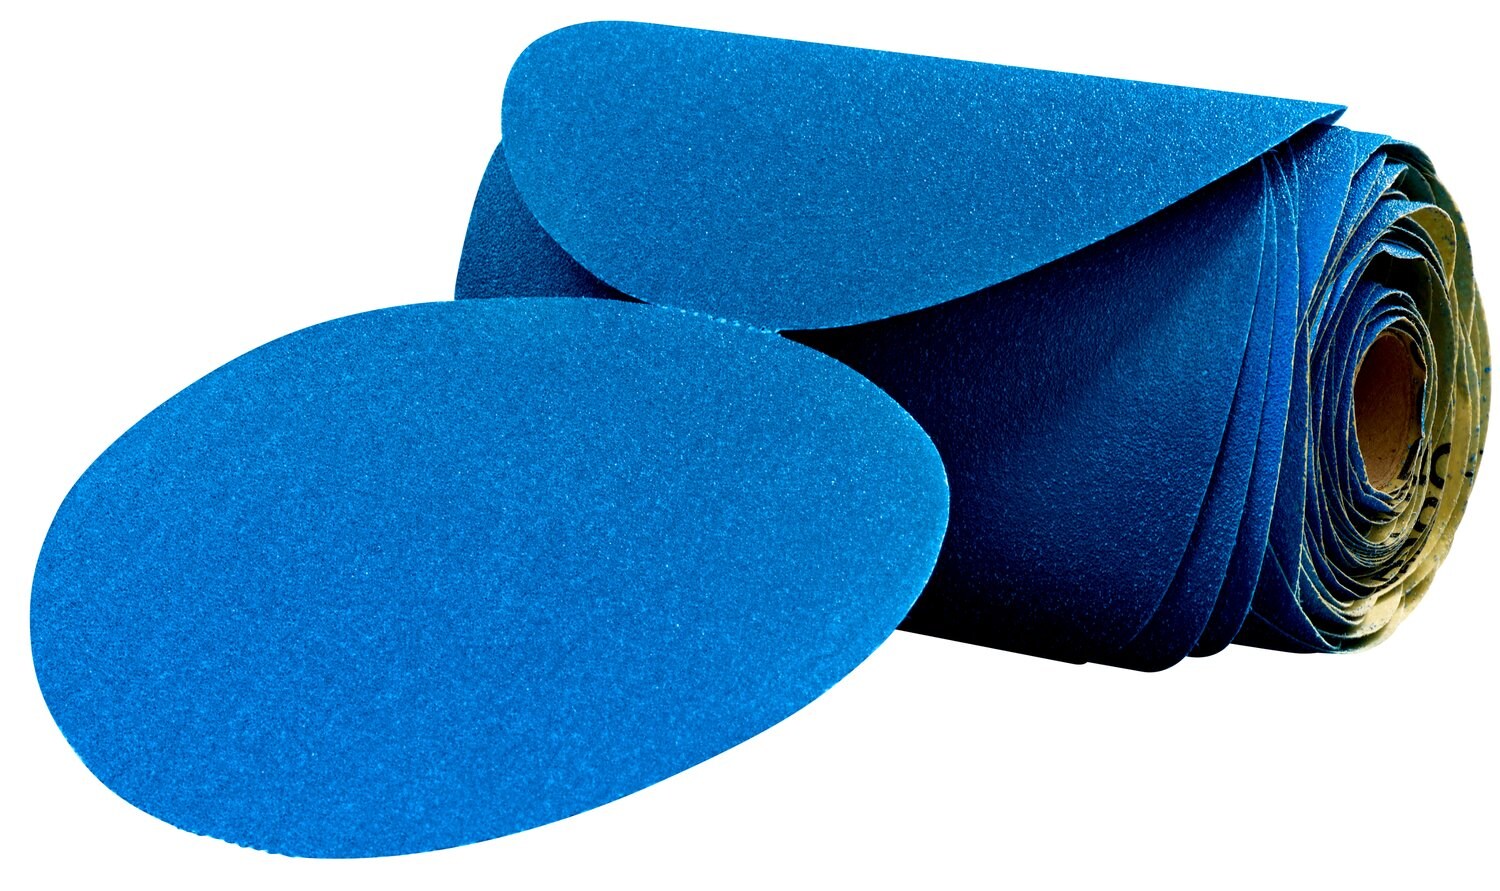 7100098236 - 3M Stikit Blue Abrasive Disc Roll, 36207, 6 in, 220 grade, 100 discs
per roll, 5 rolls per case